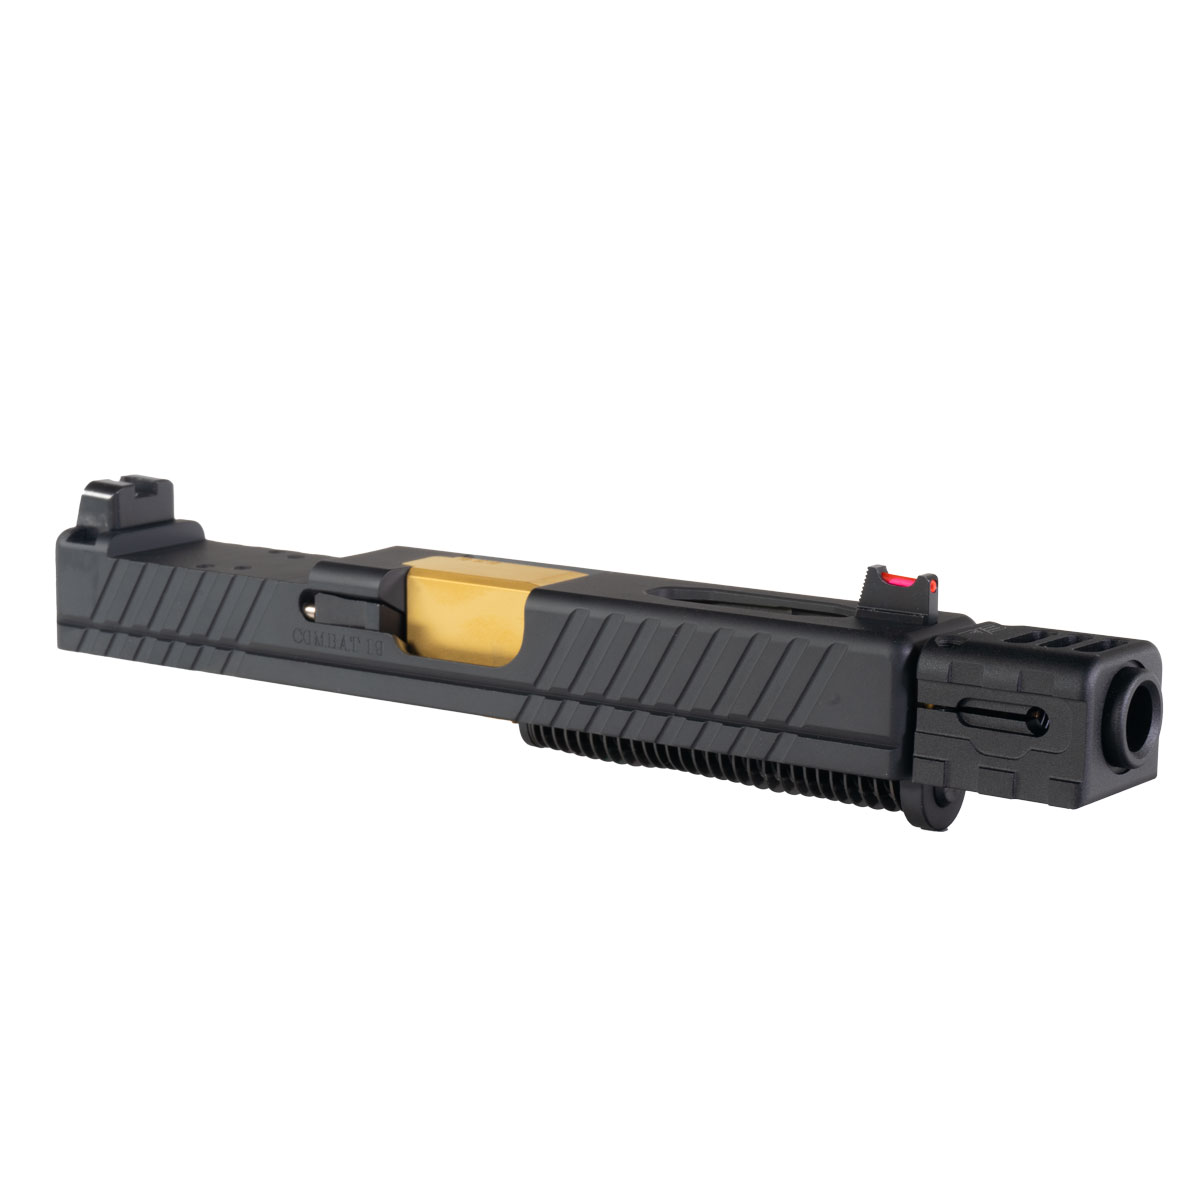 DD 'Fanrong w/ Sylvan Arms Compensator' 9mm Complete Slide Kit - Glock 19 Gen 1-3 Compatible